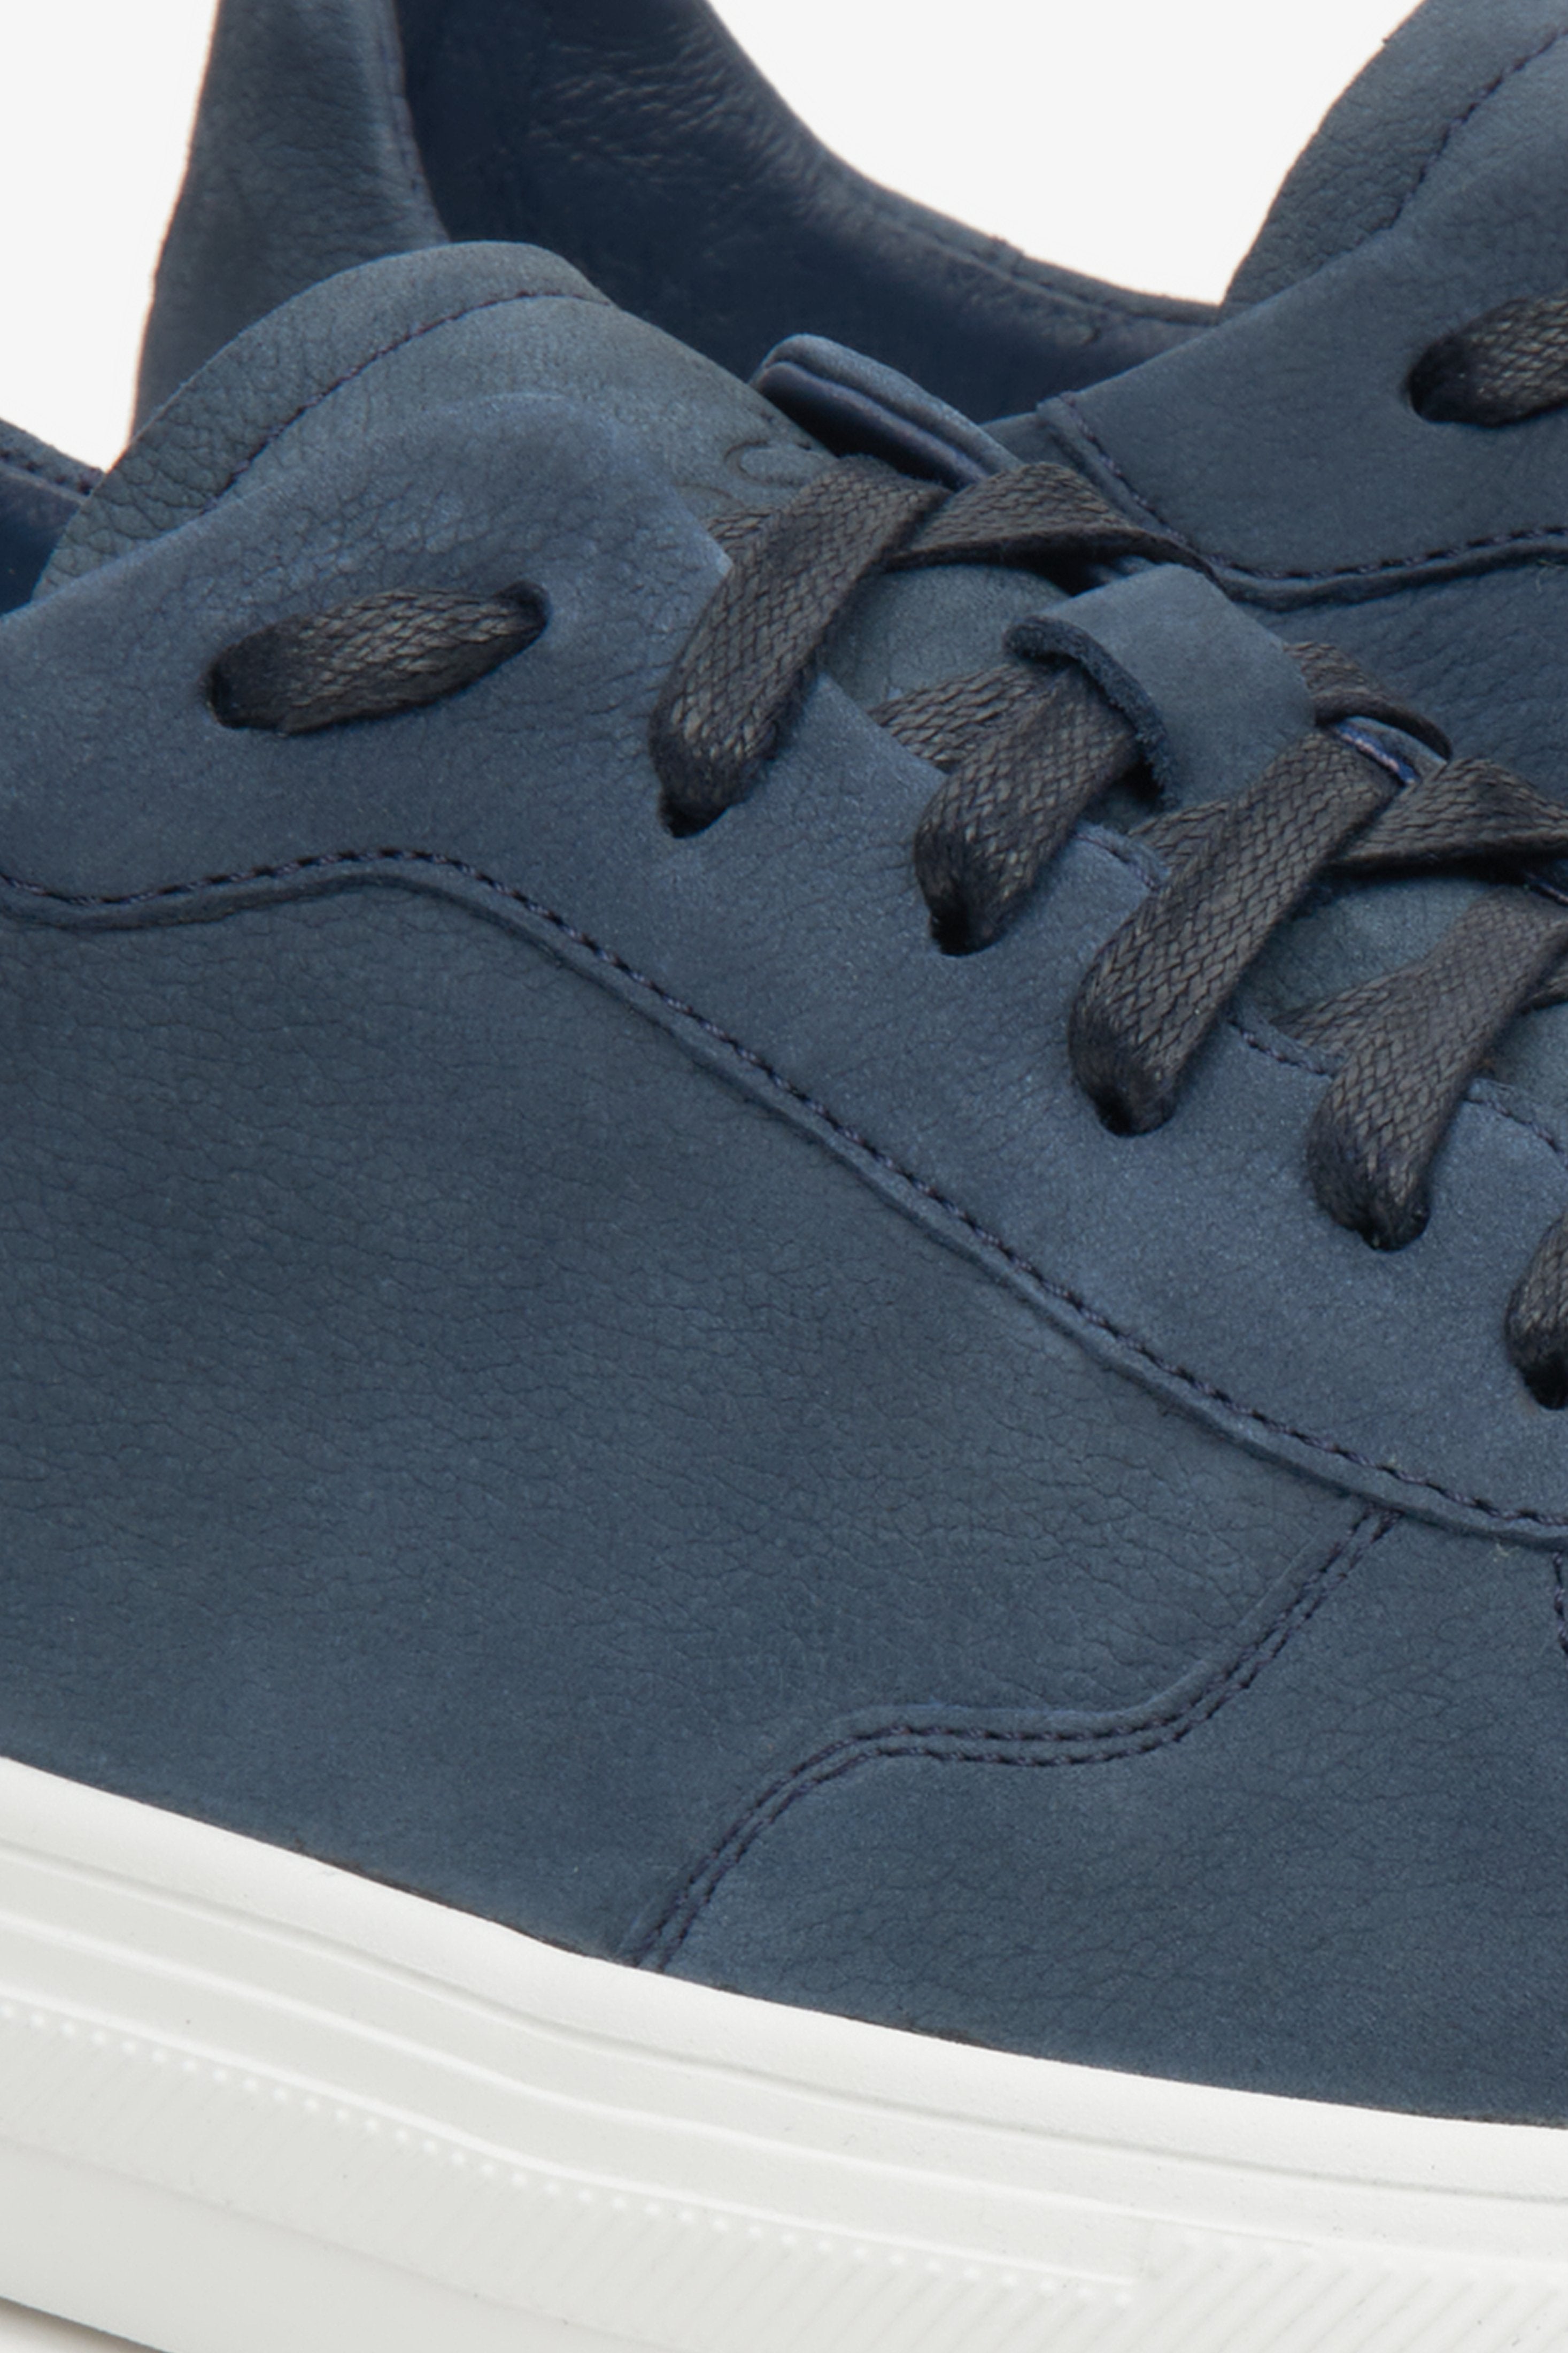 Wiosenne sneakersy męskie Estro w kolorze niebieskim - zbliżenie na system sznurowań i przeszyć.